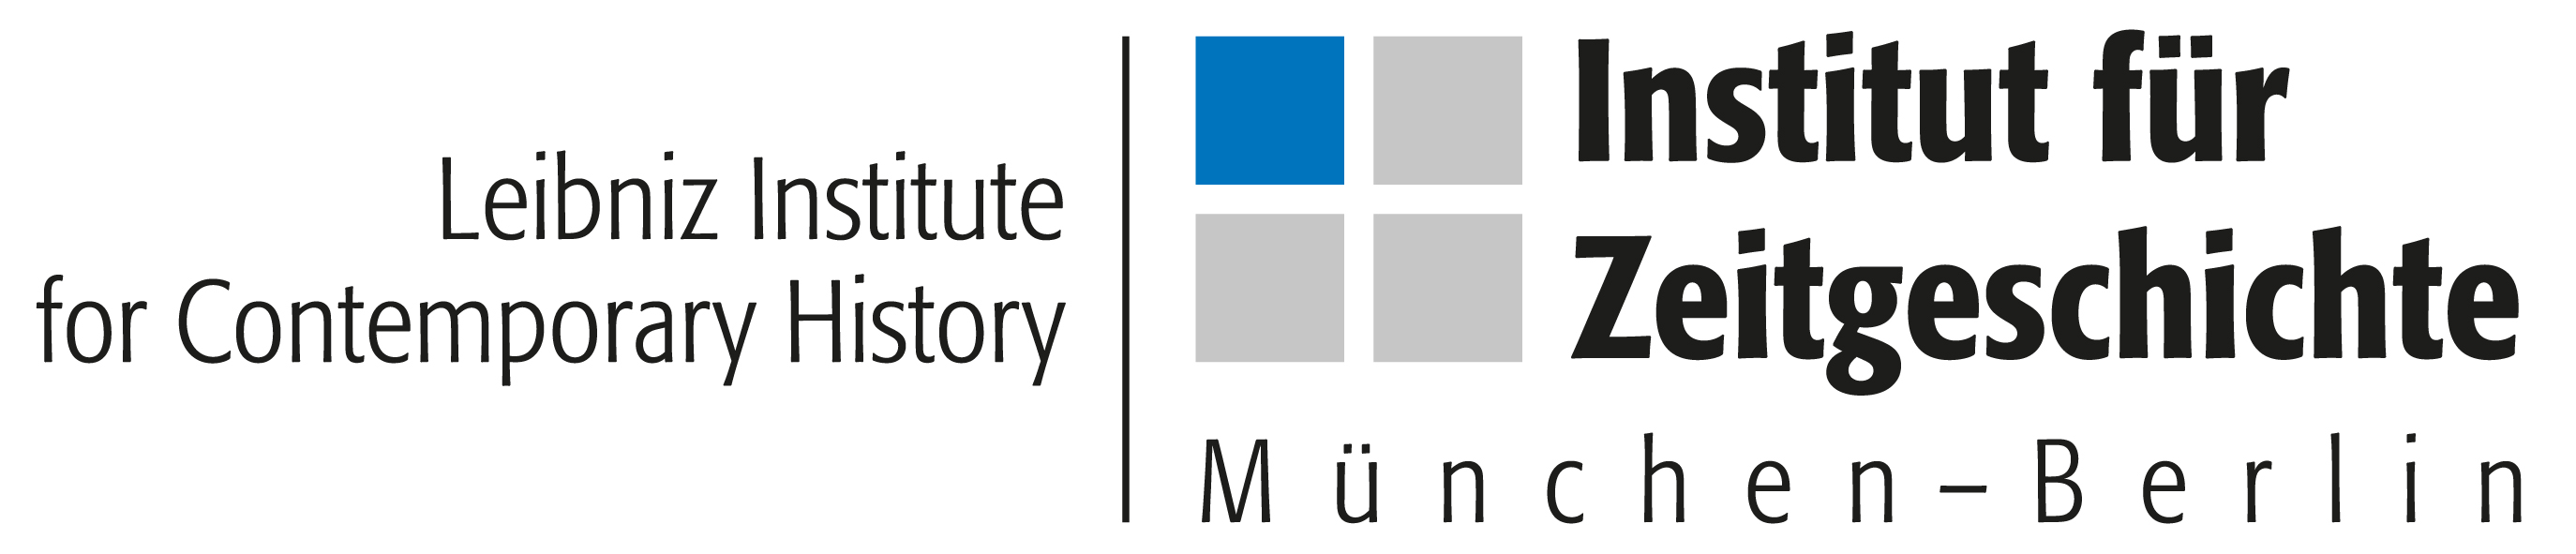 Logo: Leibnitz-Institut Institut für Zeitgeschichte München-Berlin